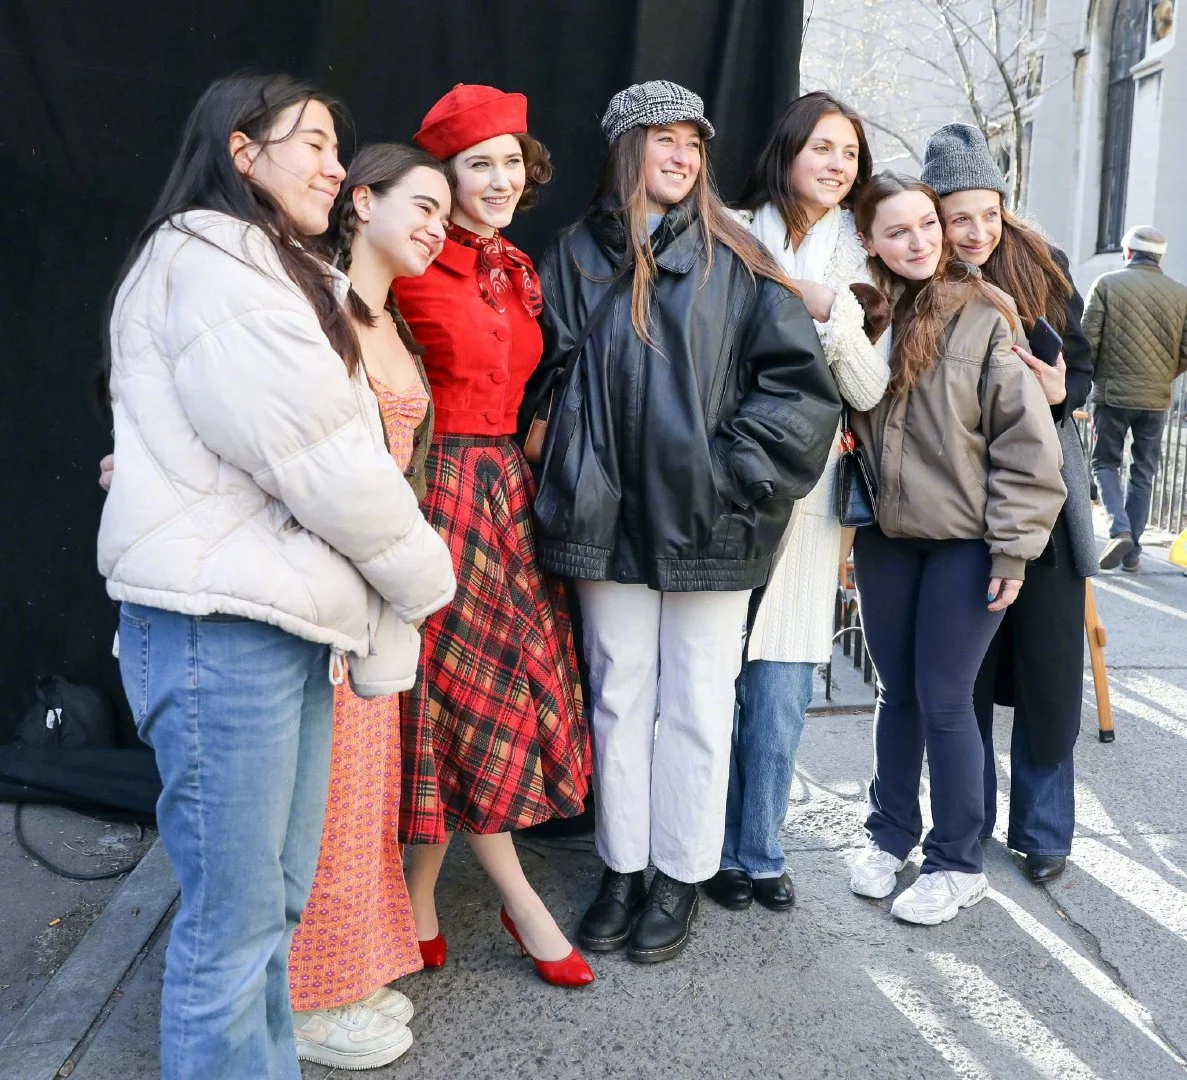 Rachel Brosnahan filming "The Marvelous Mrs. Maisel Season 5" in Central Park, New York